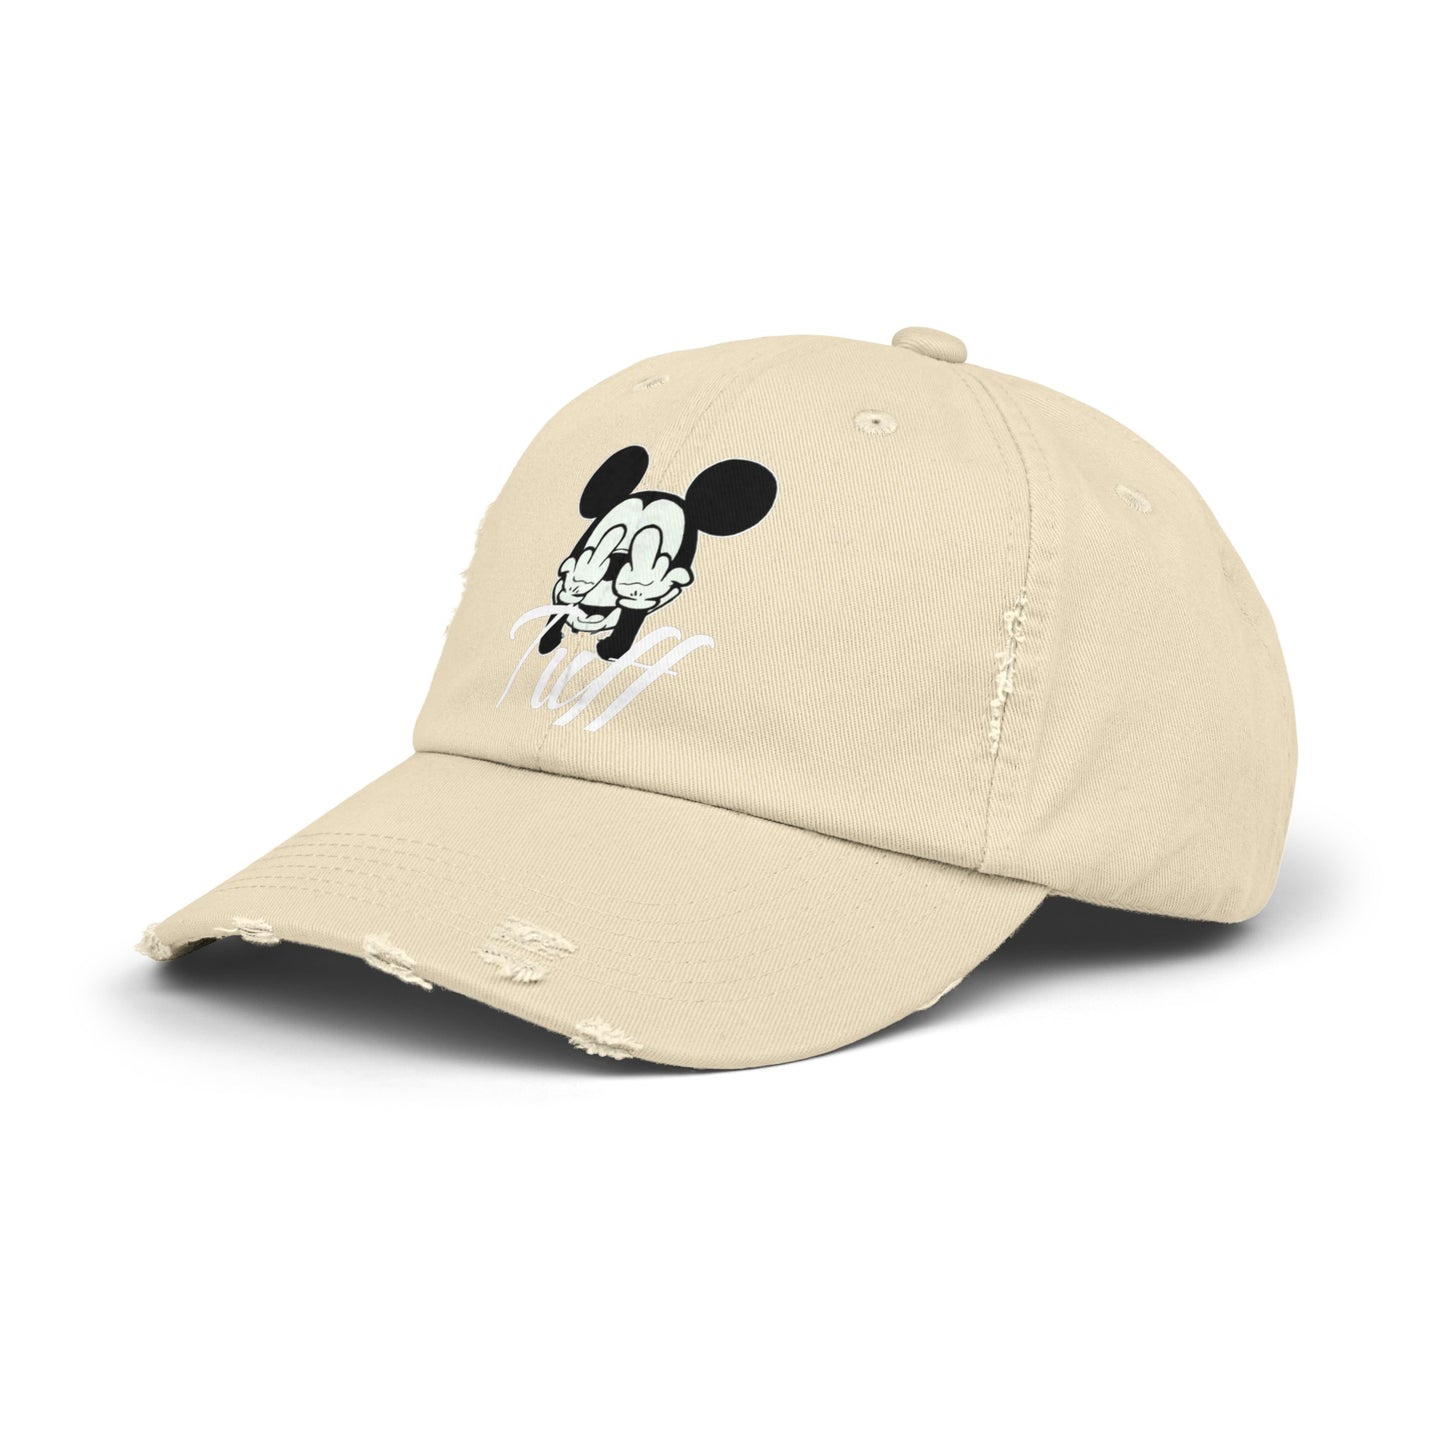 Tuff (mickey) hat